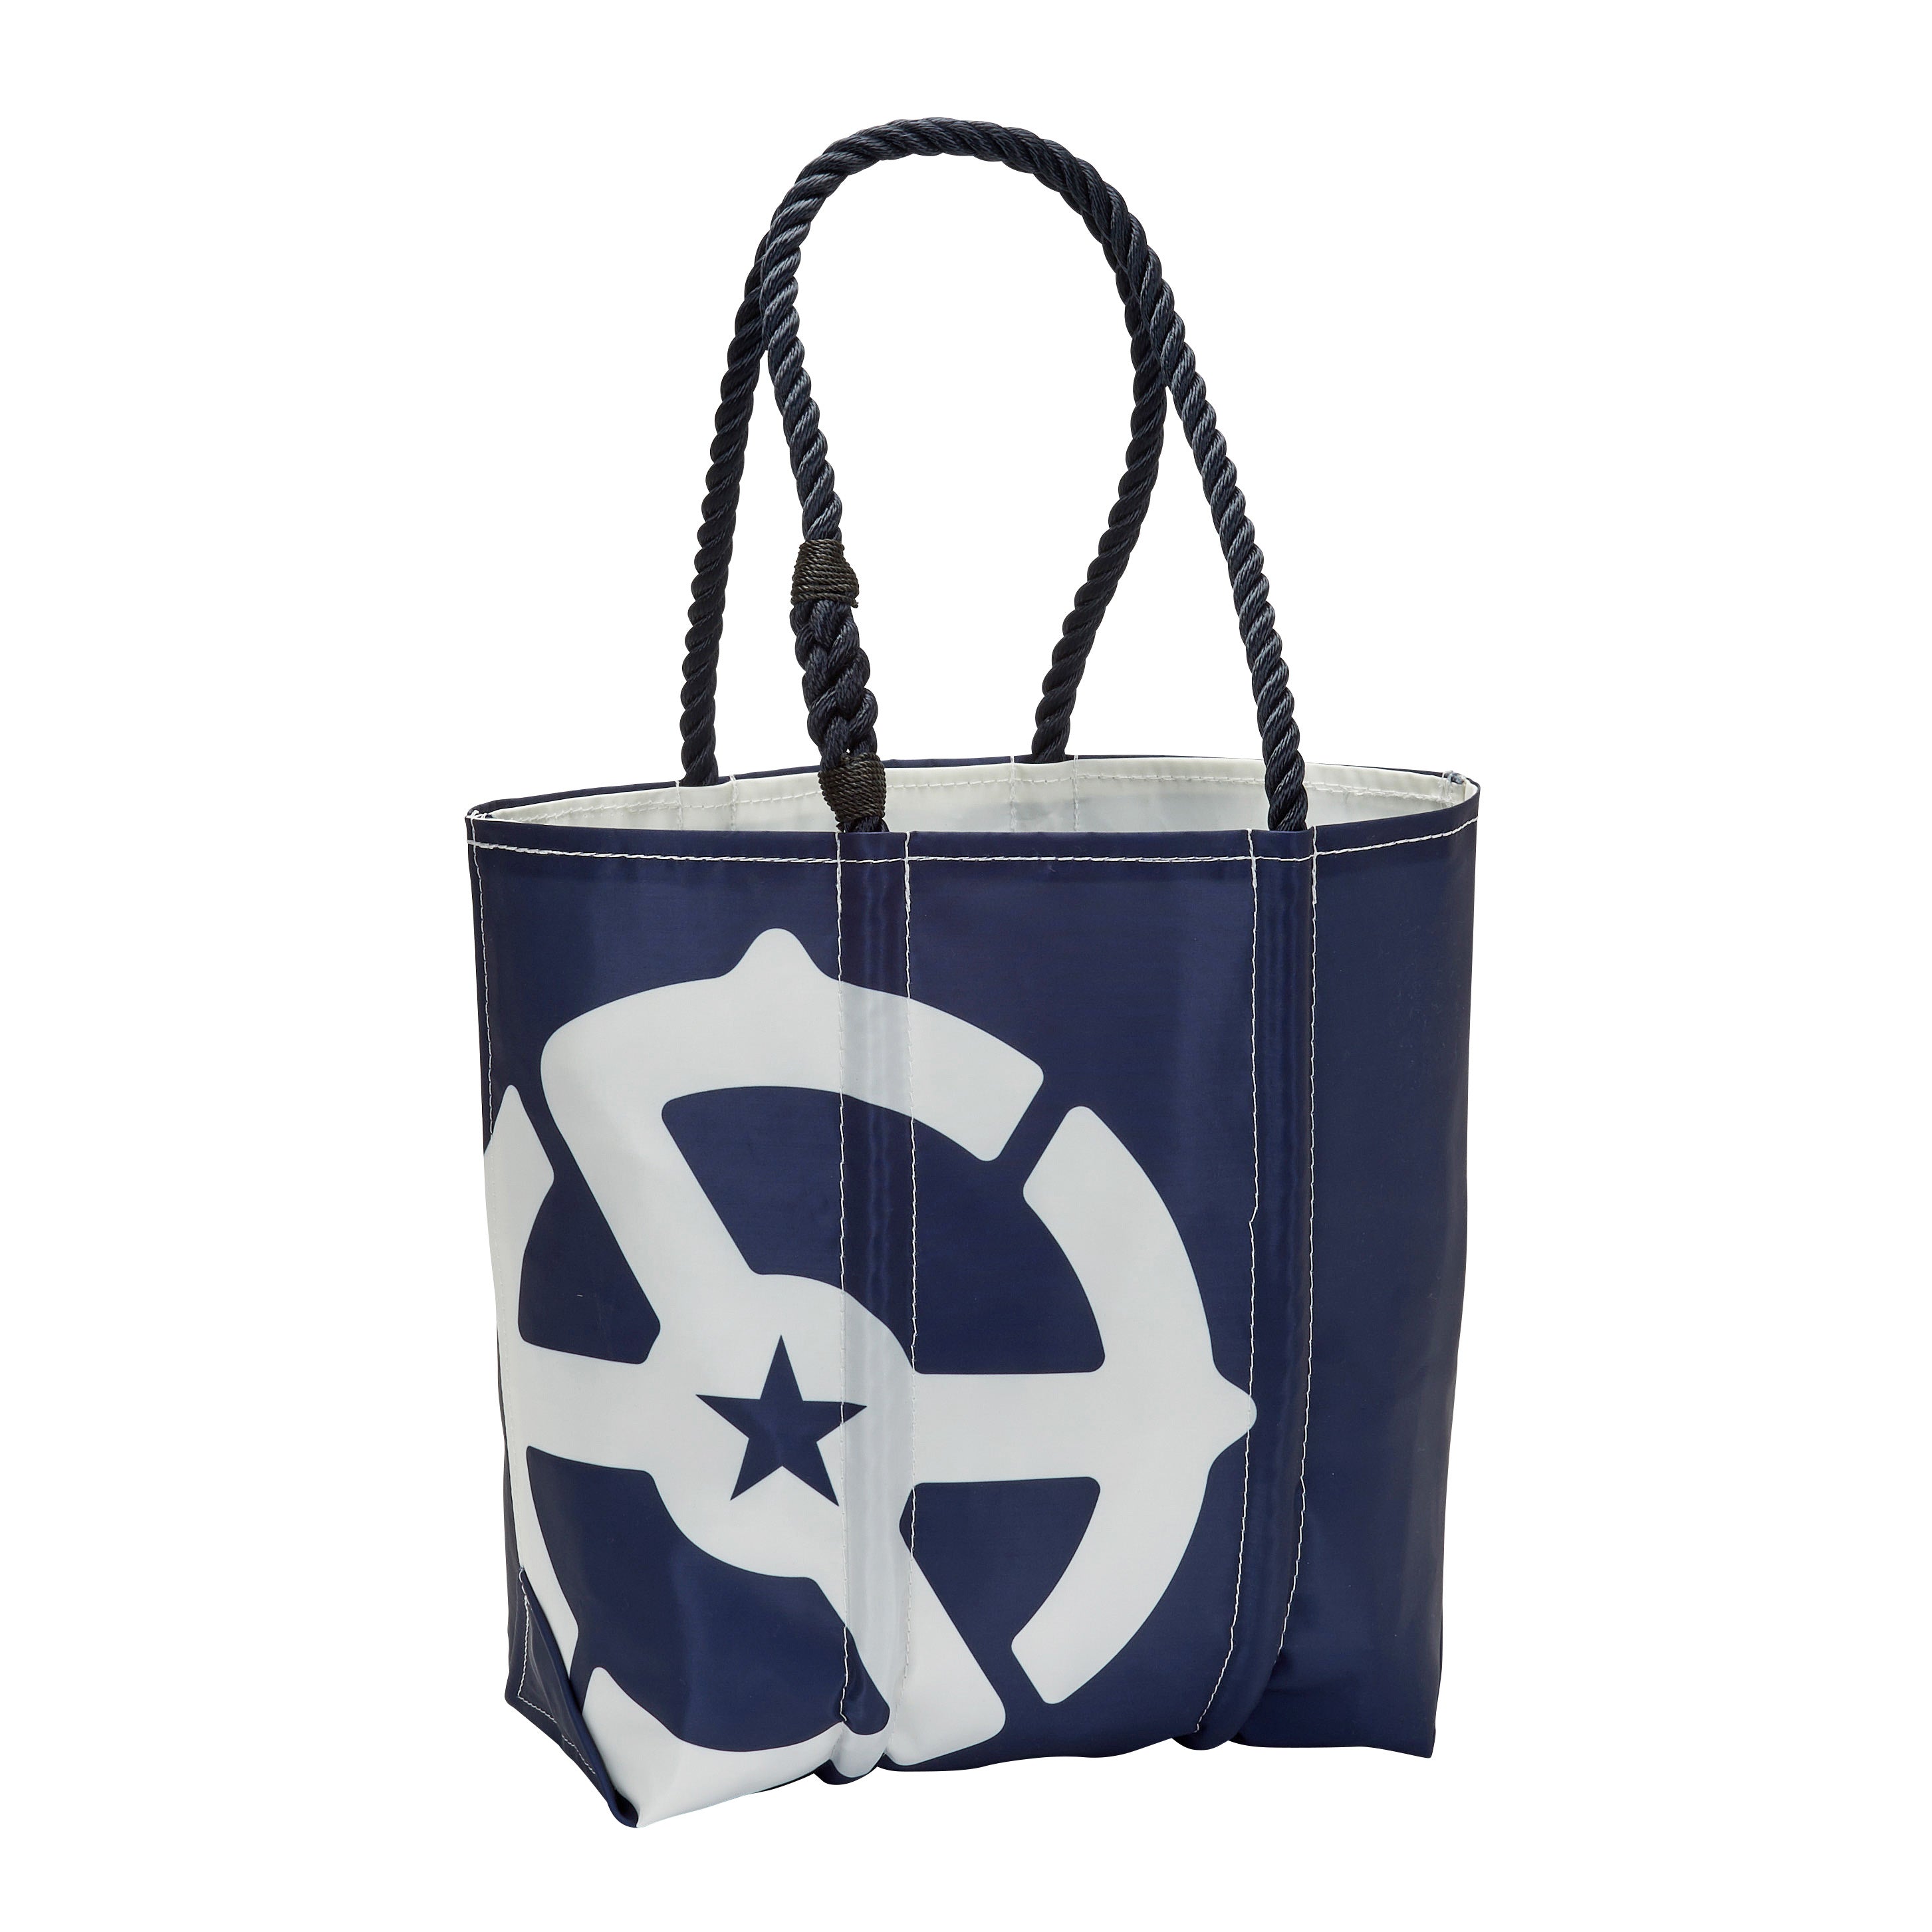 Bags | Geeking Sailcloth bags | Carryology